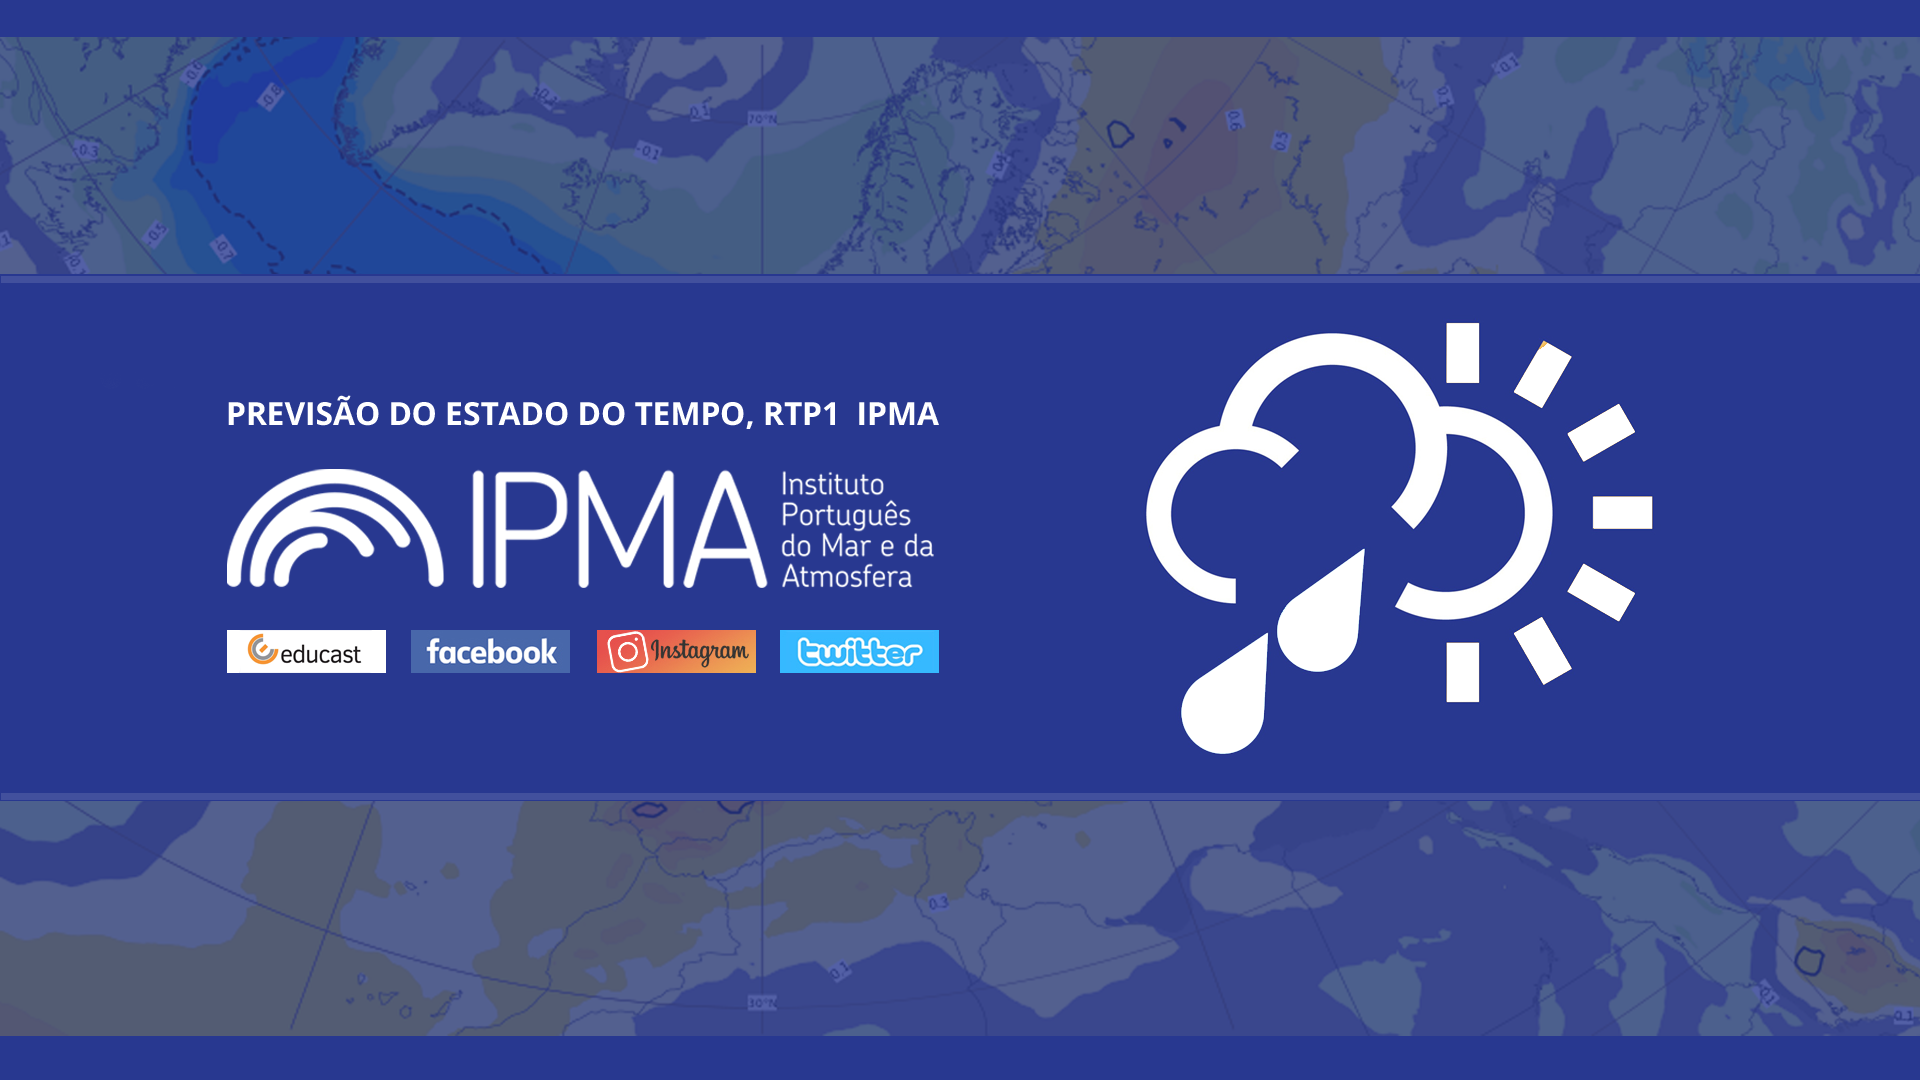  Previsão do estado do tempo, RTP1, 28-02-2022, IPMA.